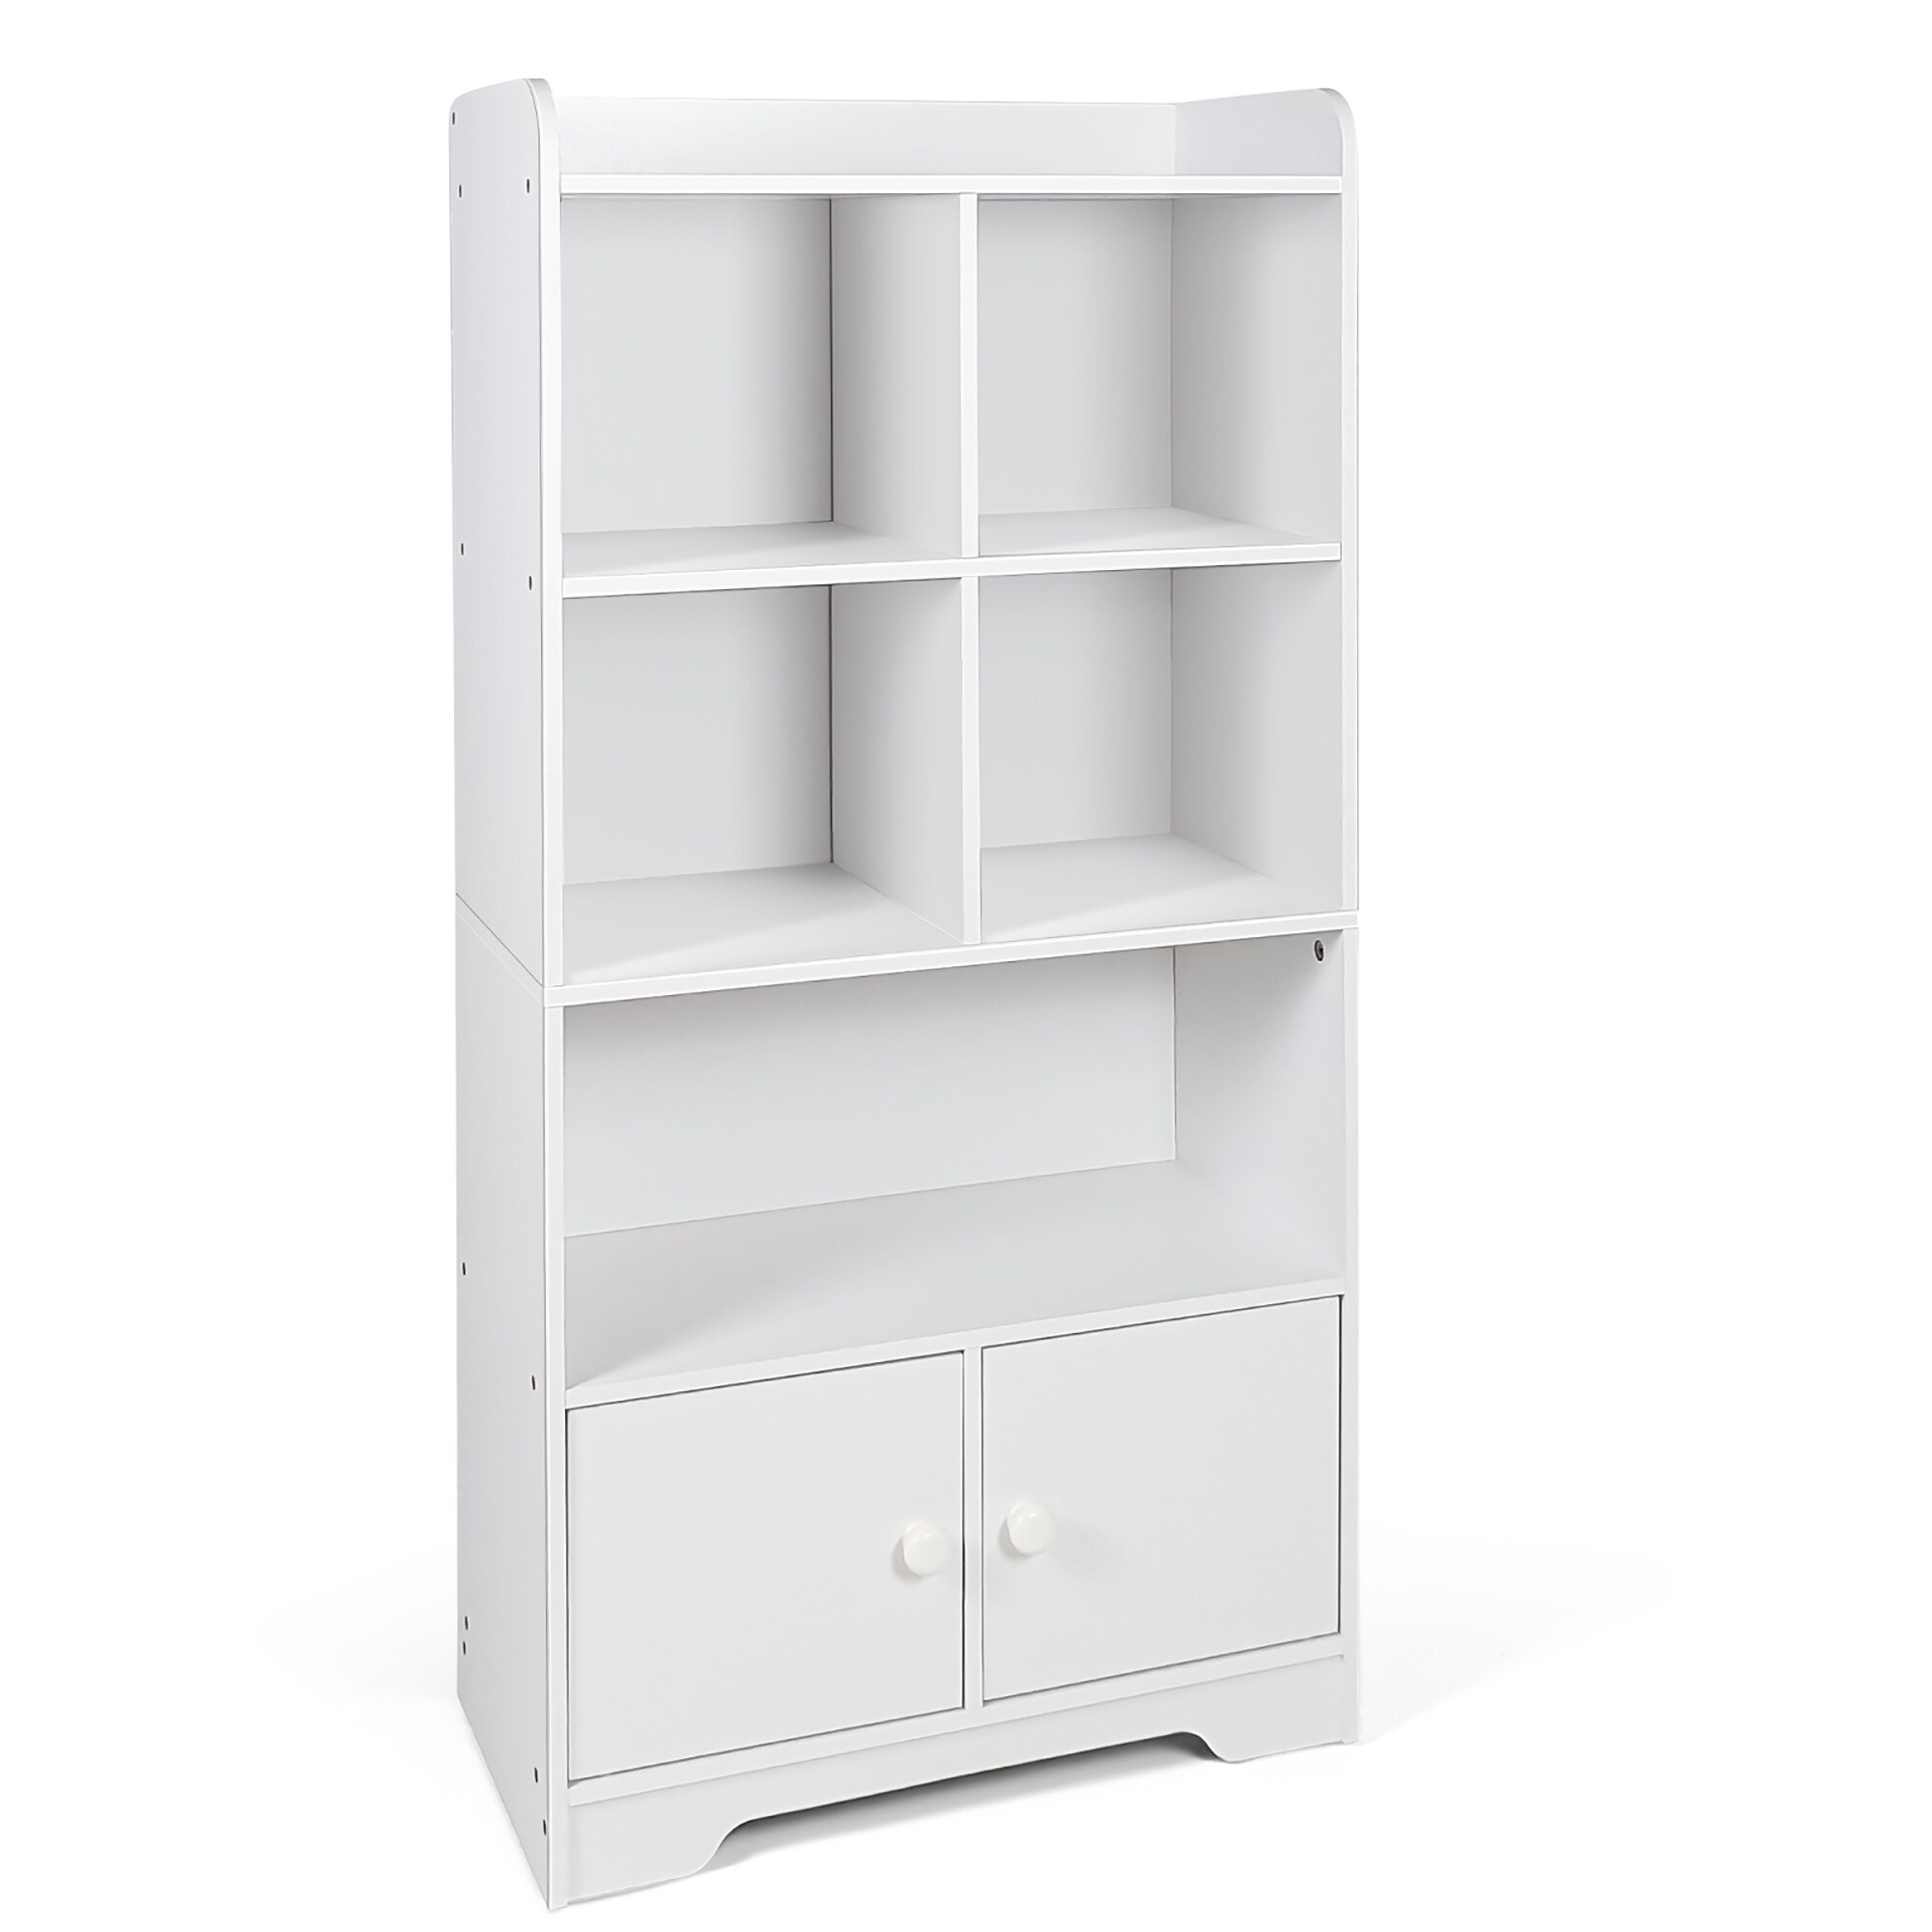 Costway 4-Tier Bookshelf 2-Door Storage Cabinet w/4 Cubes Display - See Details